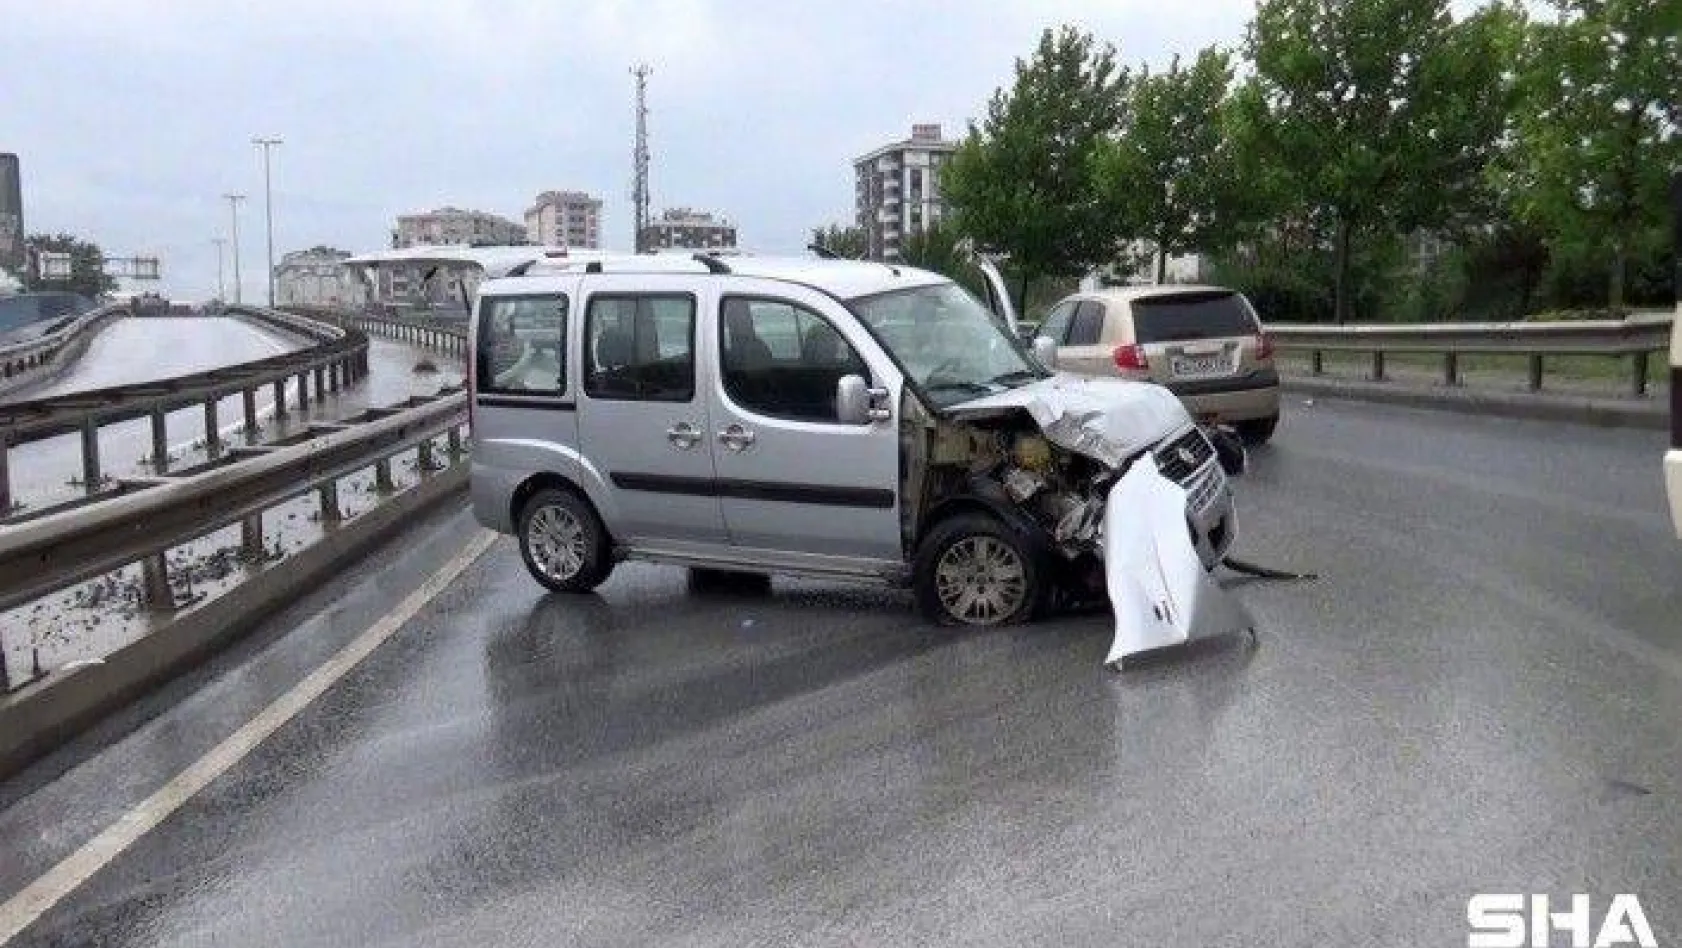 Tekirdağ'dan çalınan araç Sultangazi'de terkedilmiş halde bulundu